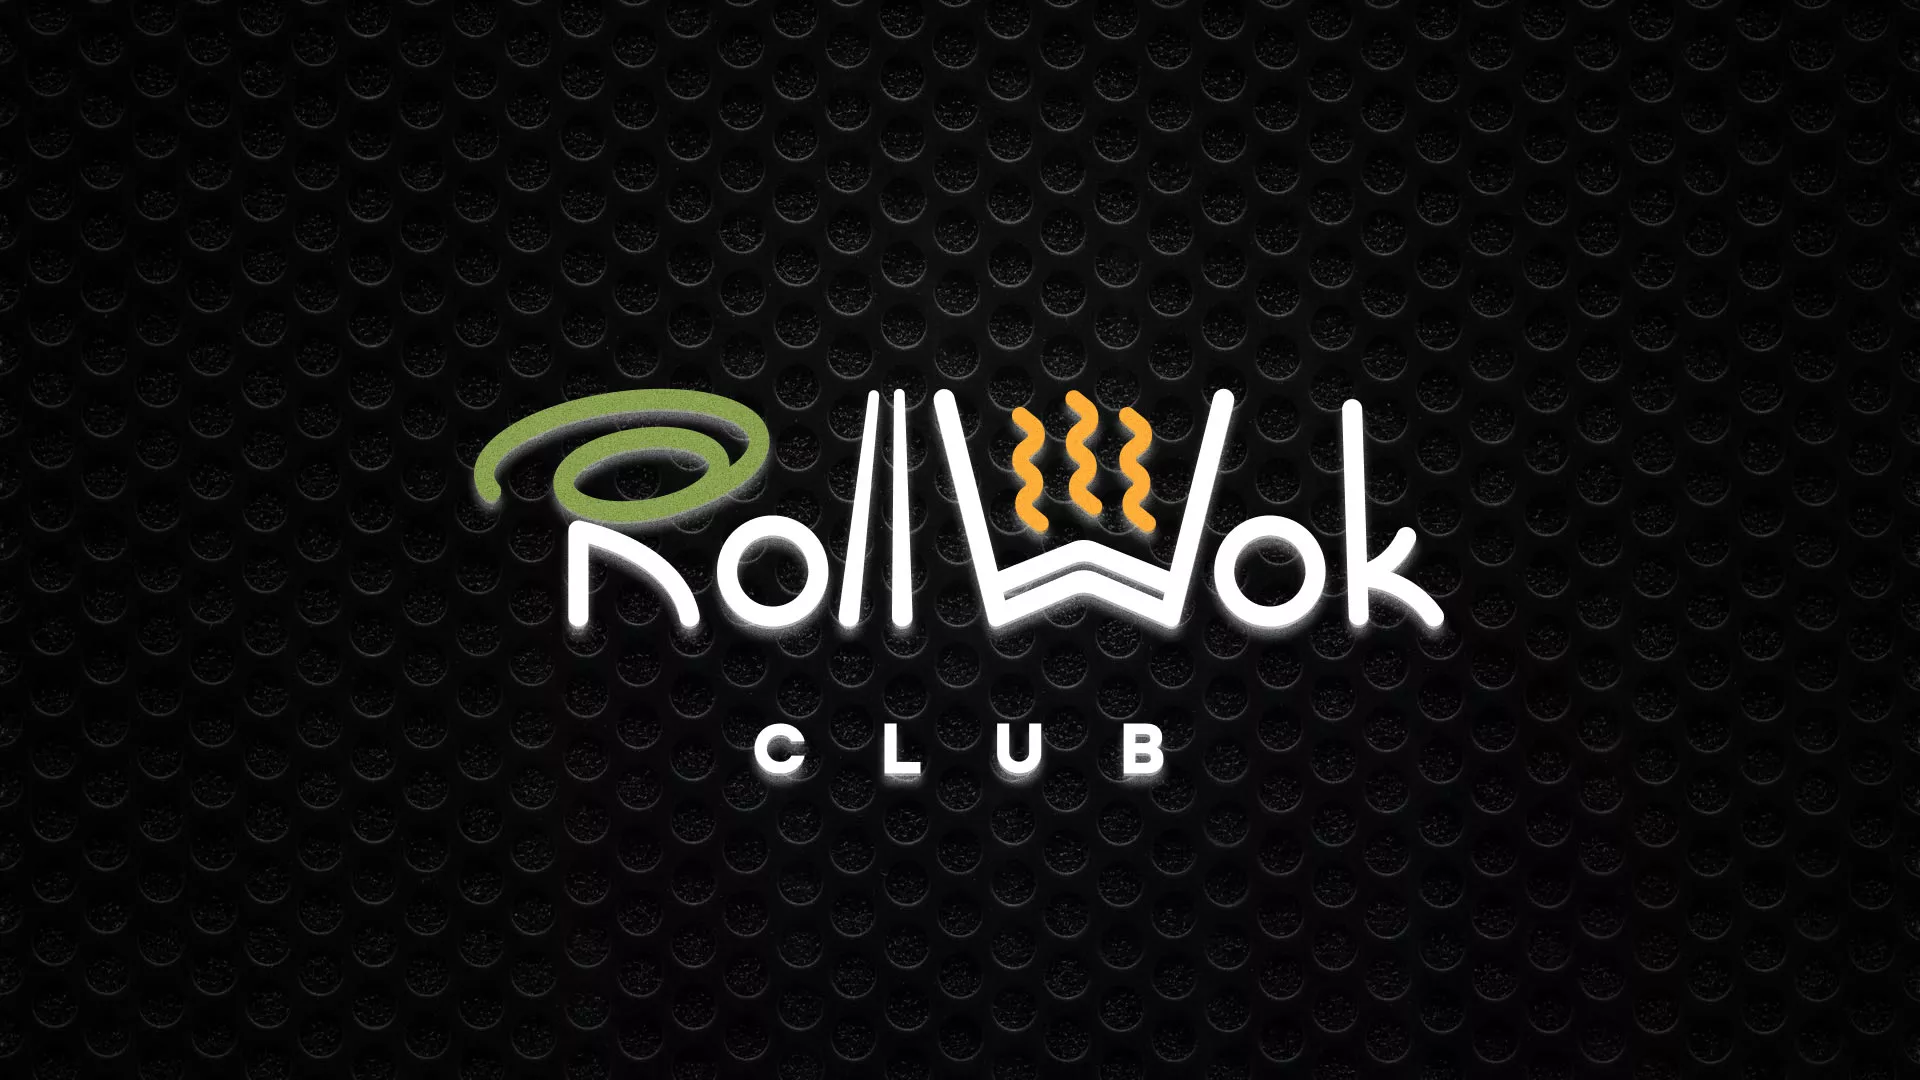 Брендирование торговых точек суши-бара «Roll Wok Club» в Шлиссельбурге